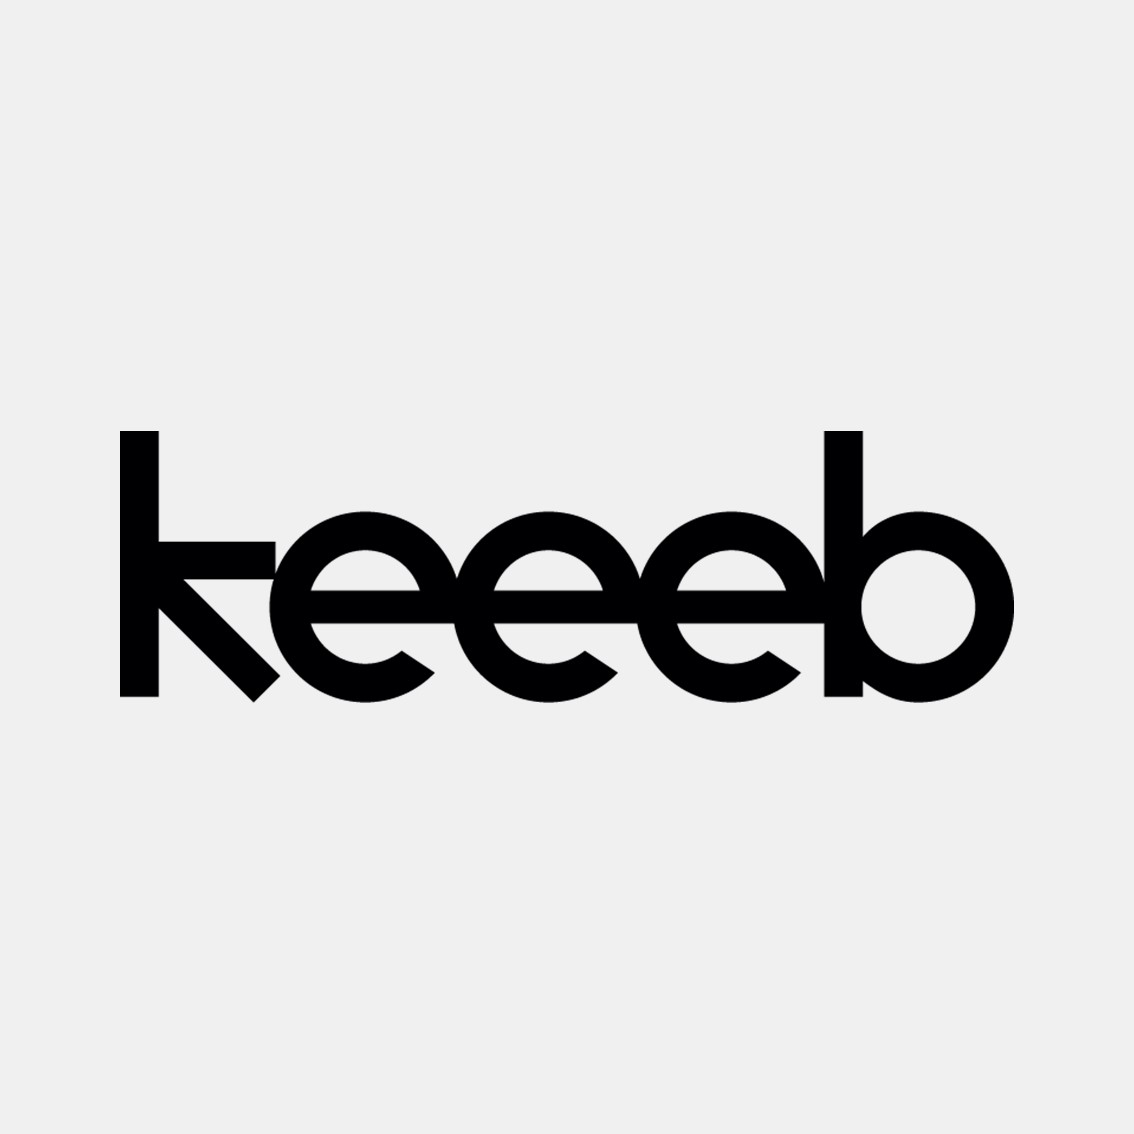 Keeeb Inc Logo